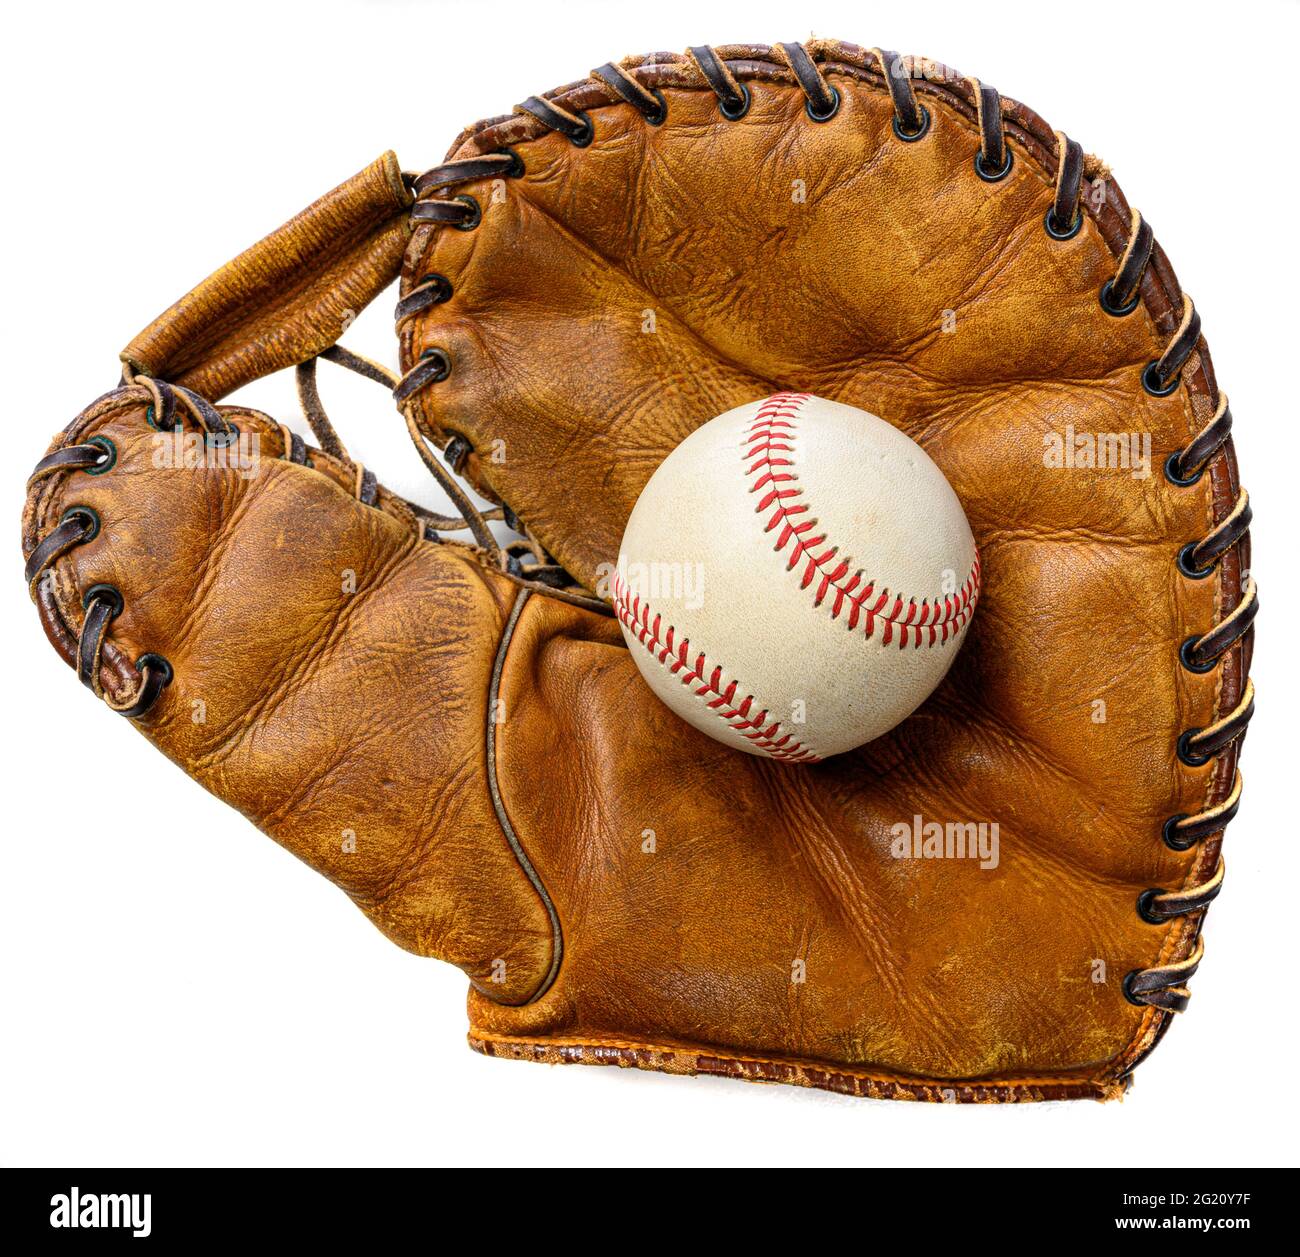 Ein weißer Leder-Baseballschläger in einem braunen Vintage-Handschuh Stockfoto